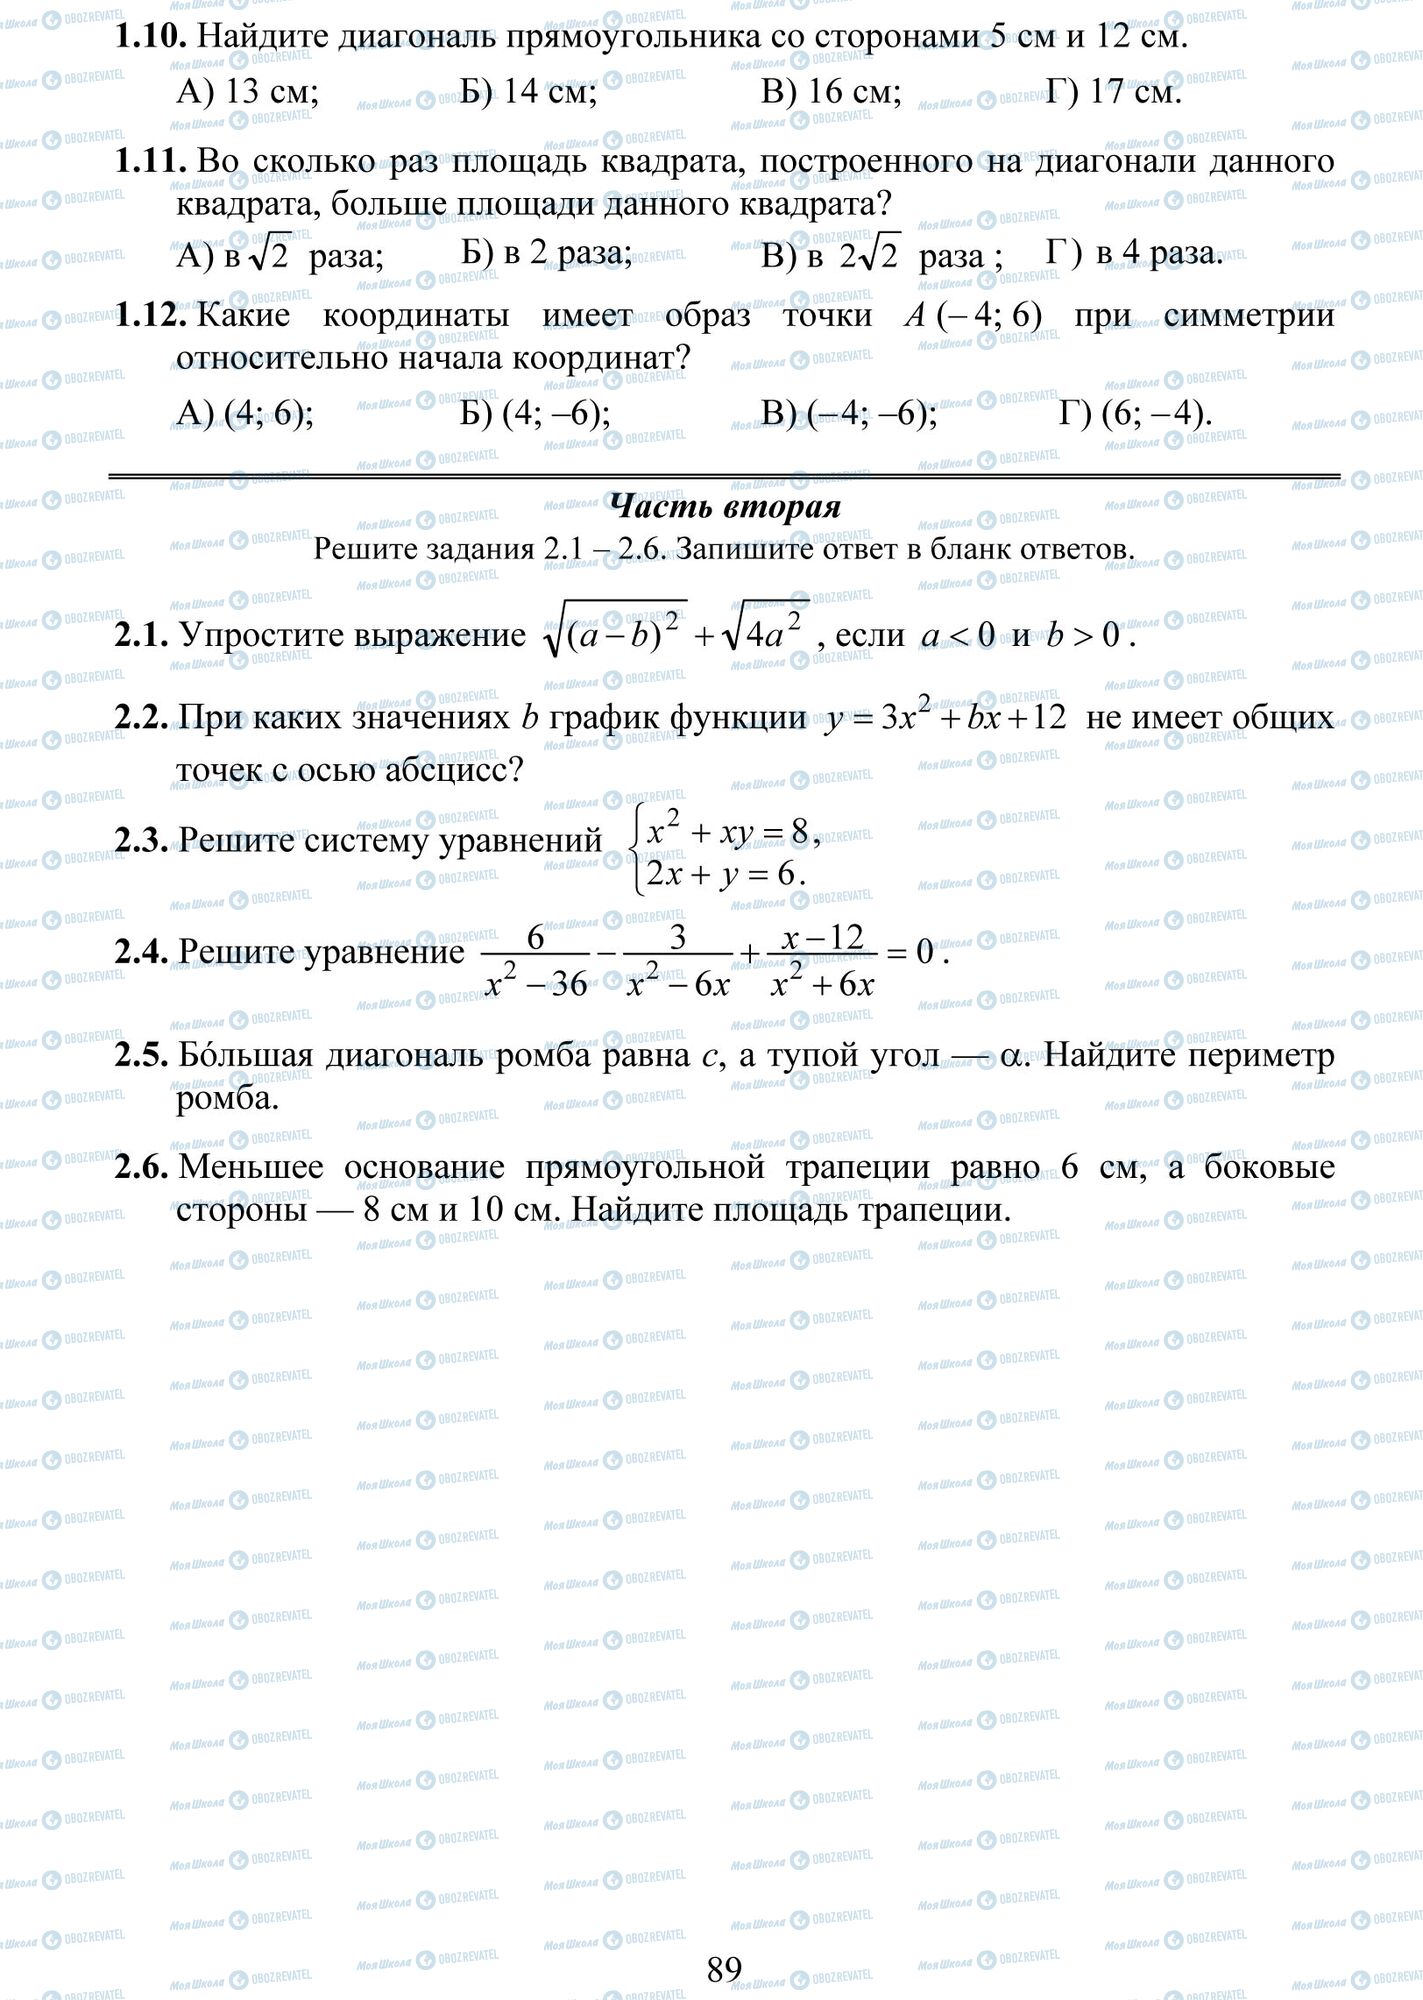 ДПА Математика 9 класс страница 10-12